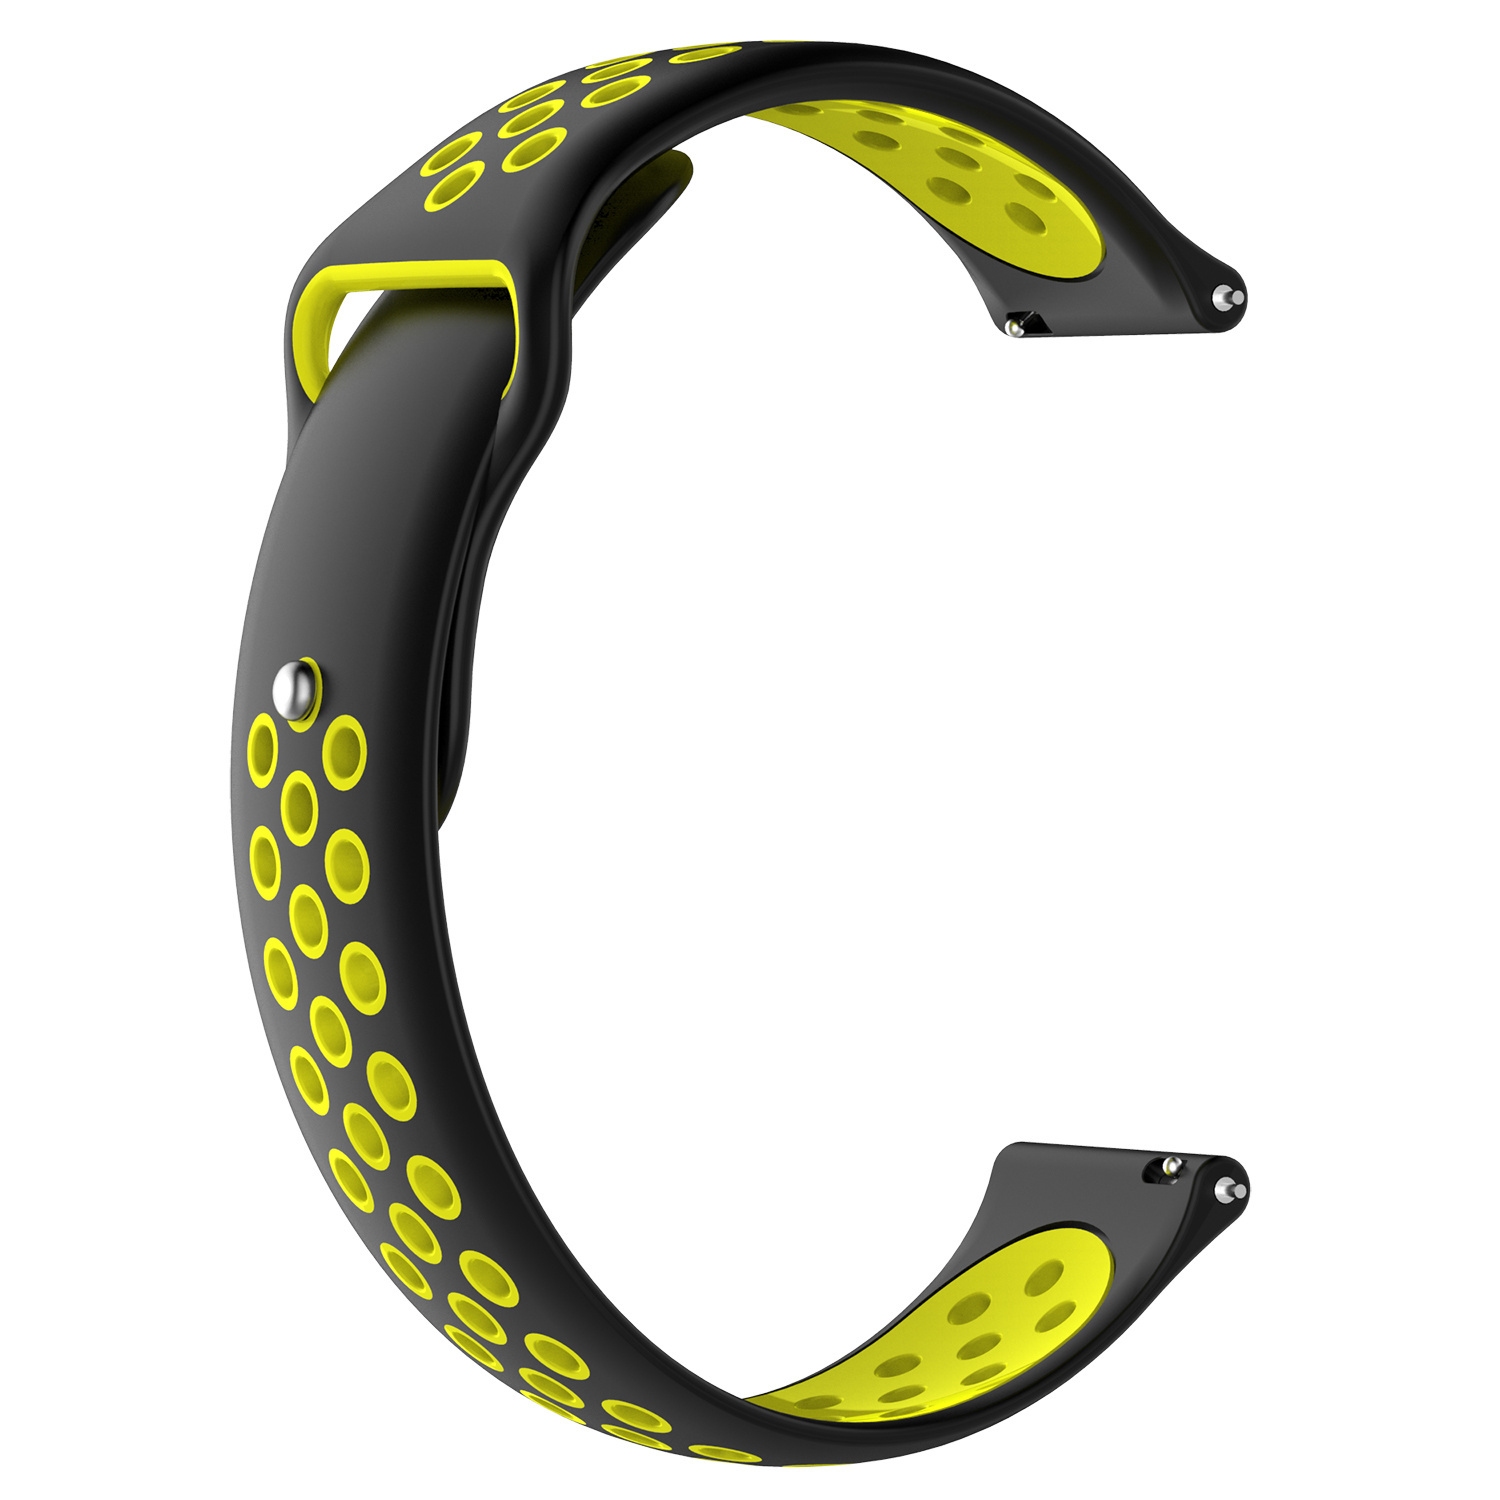 Cinturino doppio sport per Samsung Galaxy Watch - nero giallo